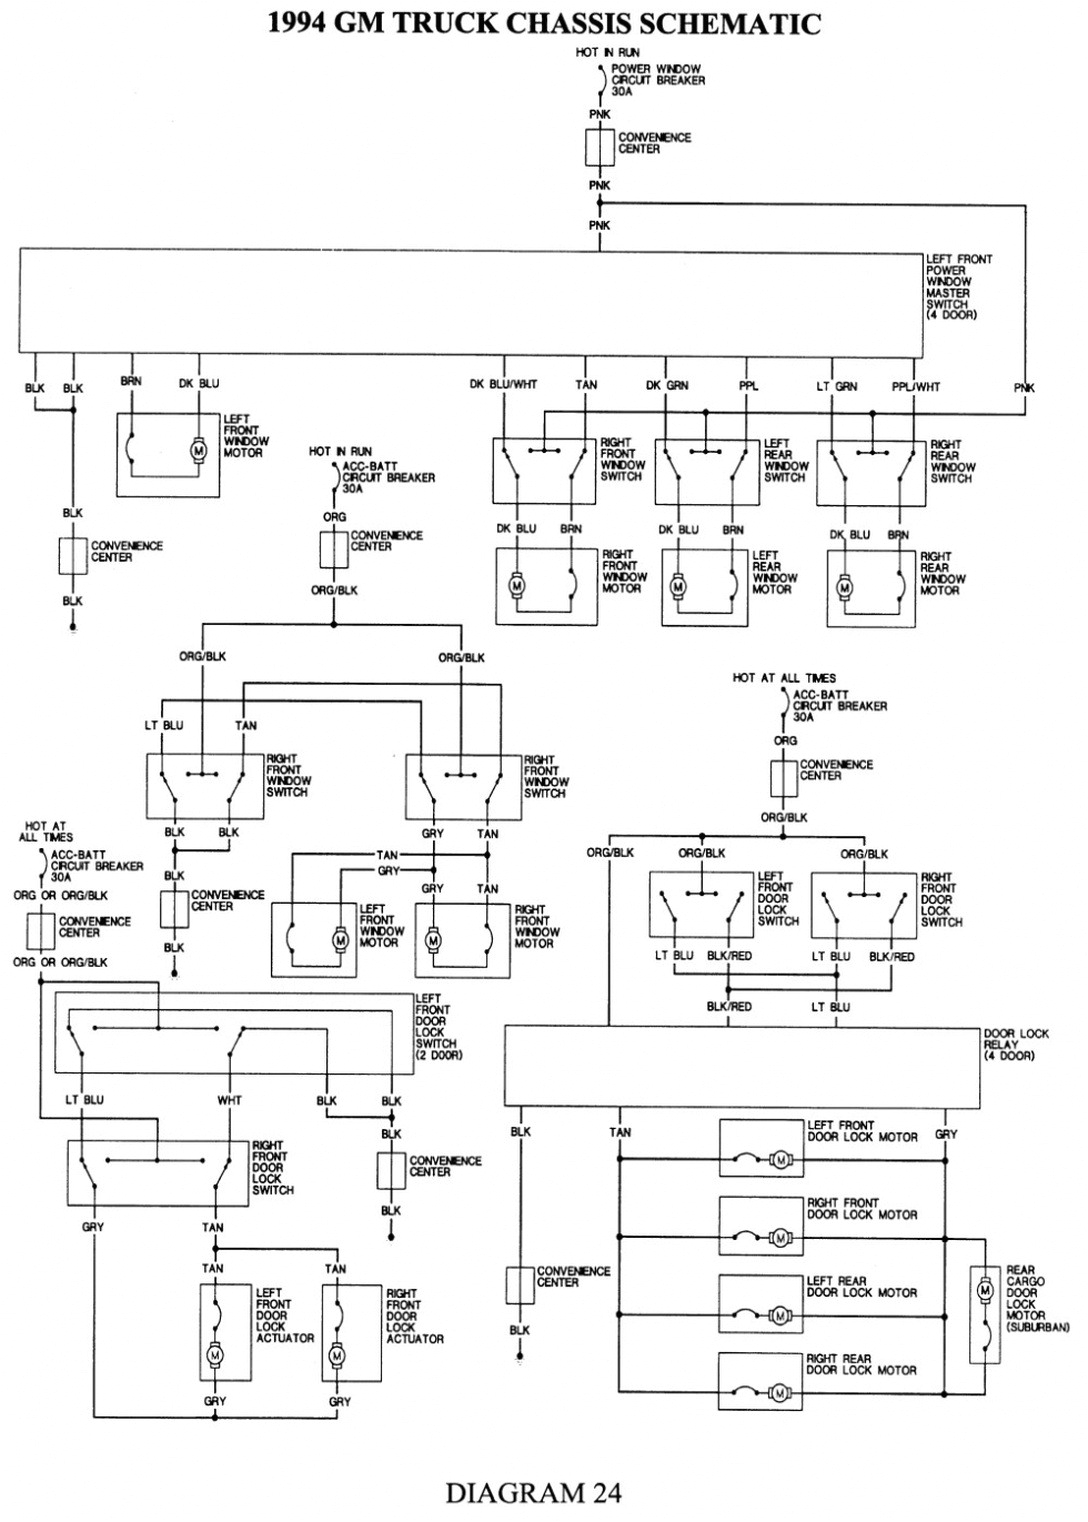 1994 chevy astro alternator wiring wiring diagram name 1994 chevy astro wiring diagram free download